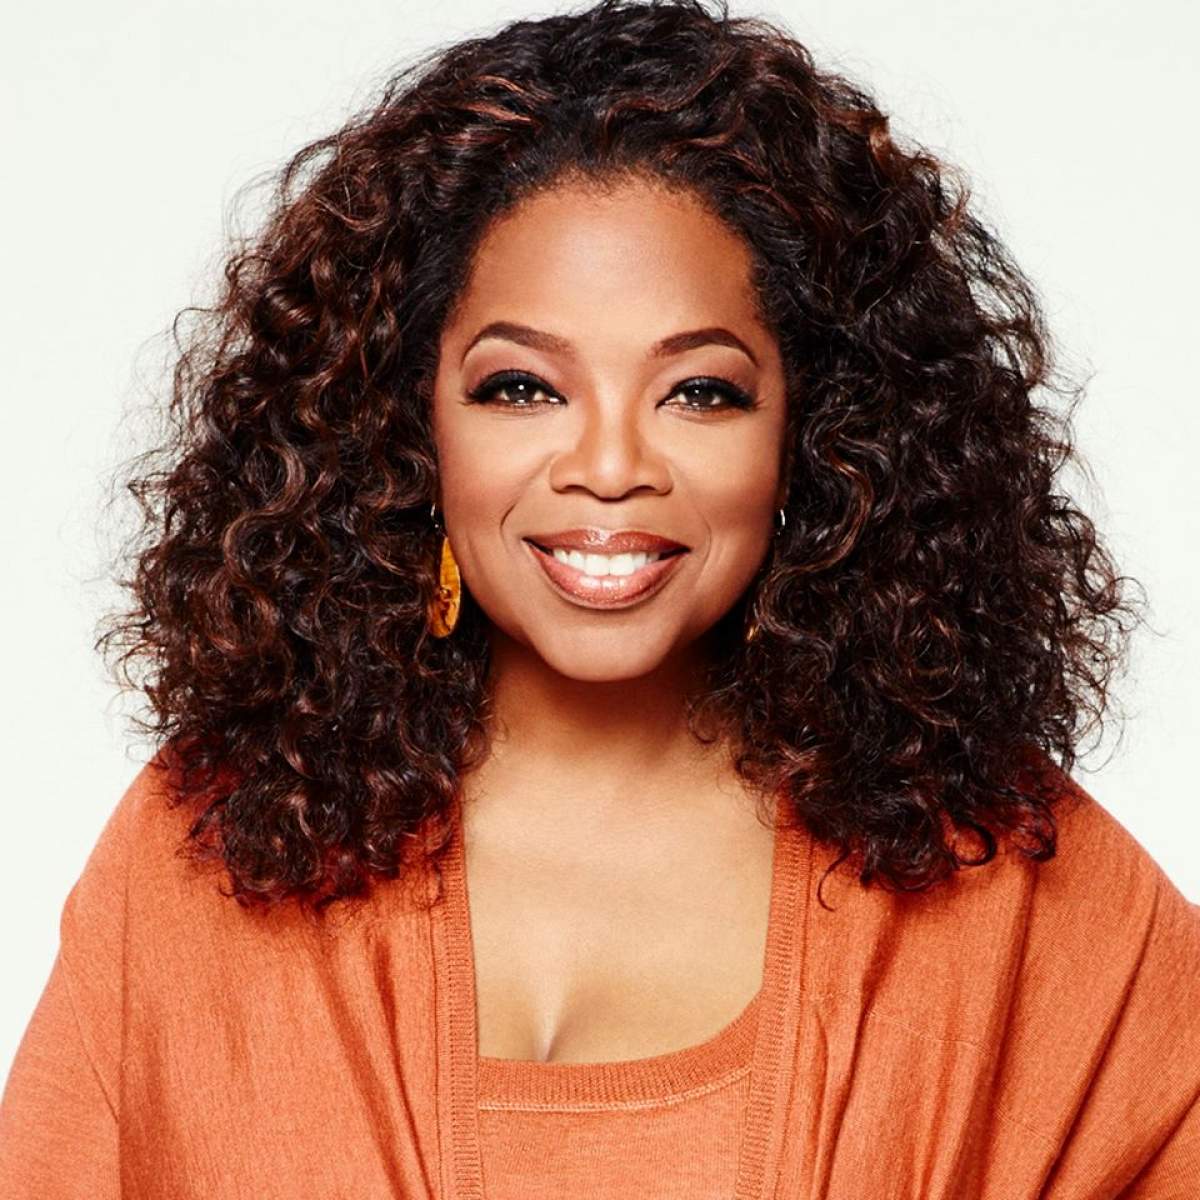 Uluitor! Oprah nu a fost căsătorită niciodată şi nici nu are copii. Care este motivul